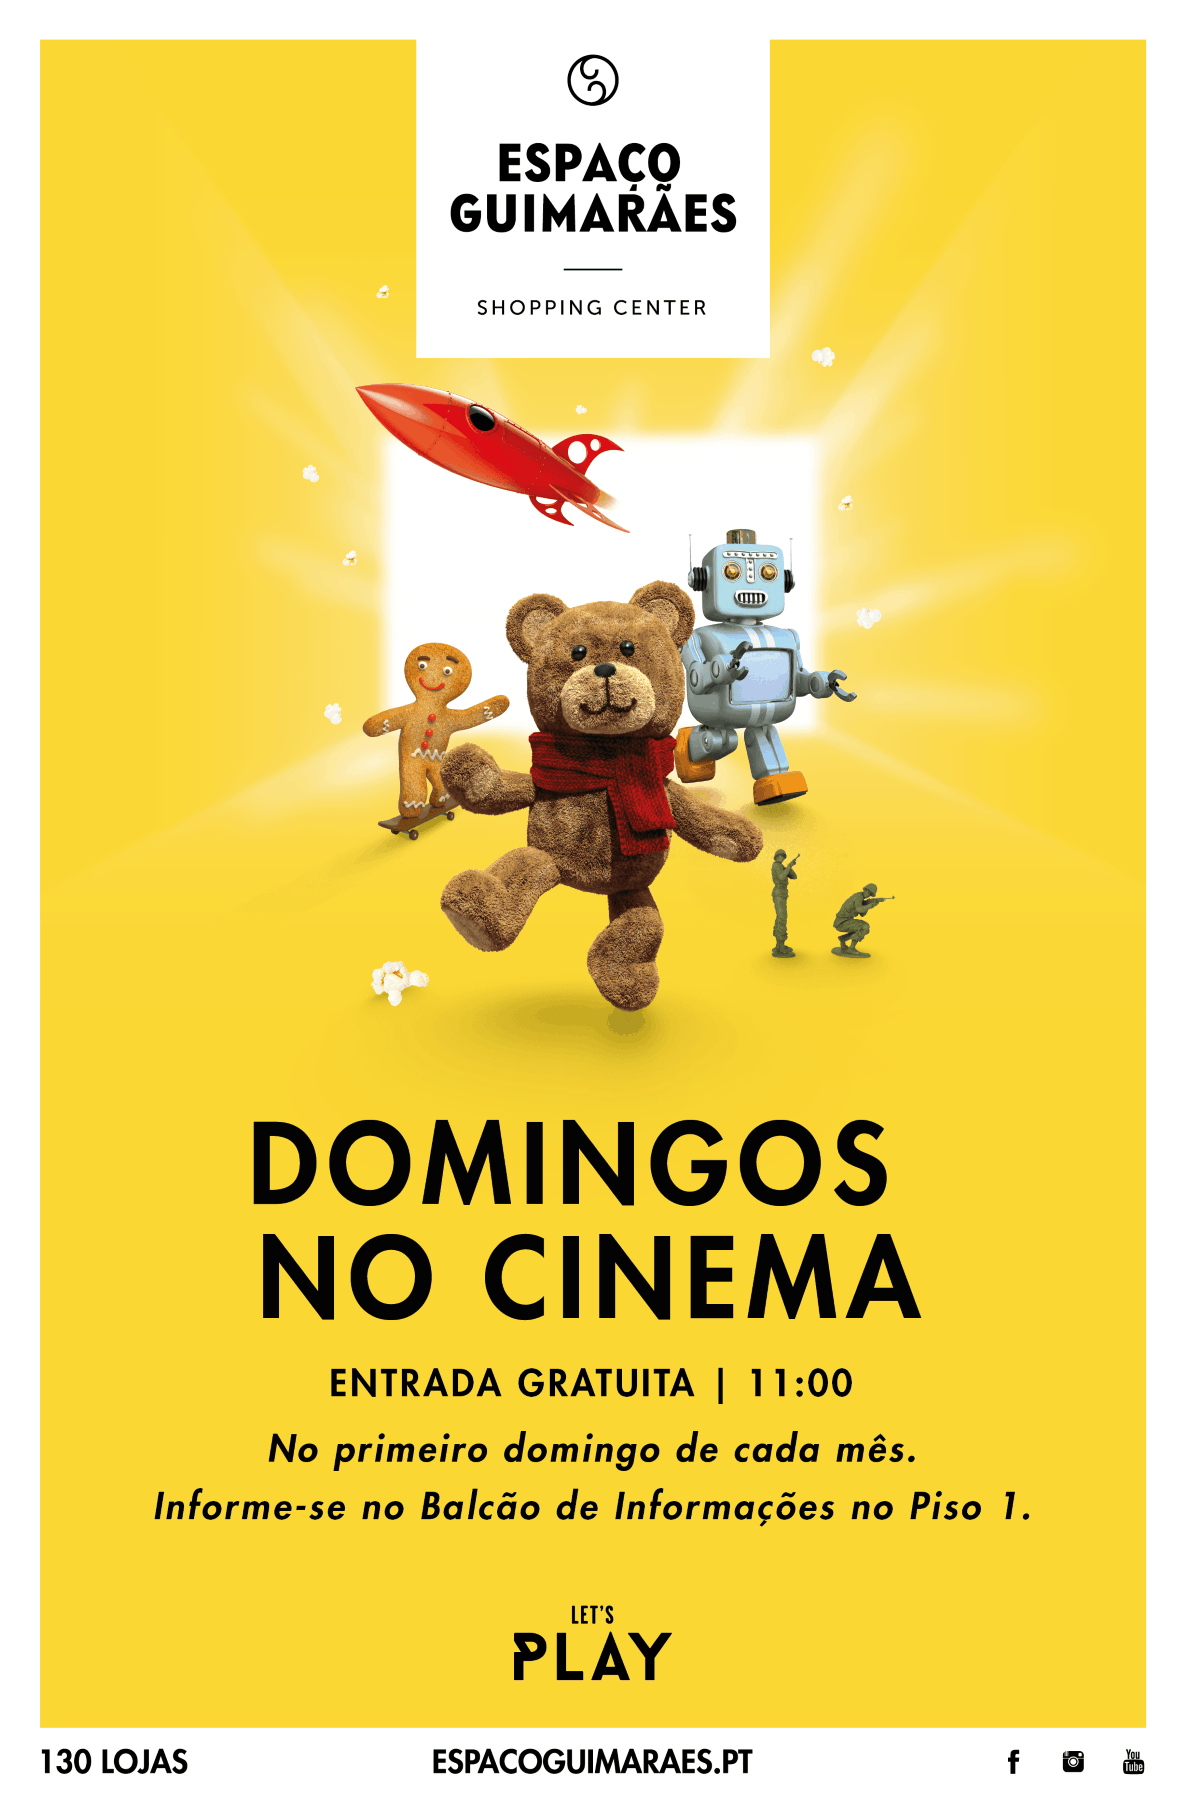 DOMINGOS NO CINEMA – ESPAÇO GUIMARÃES